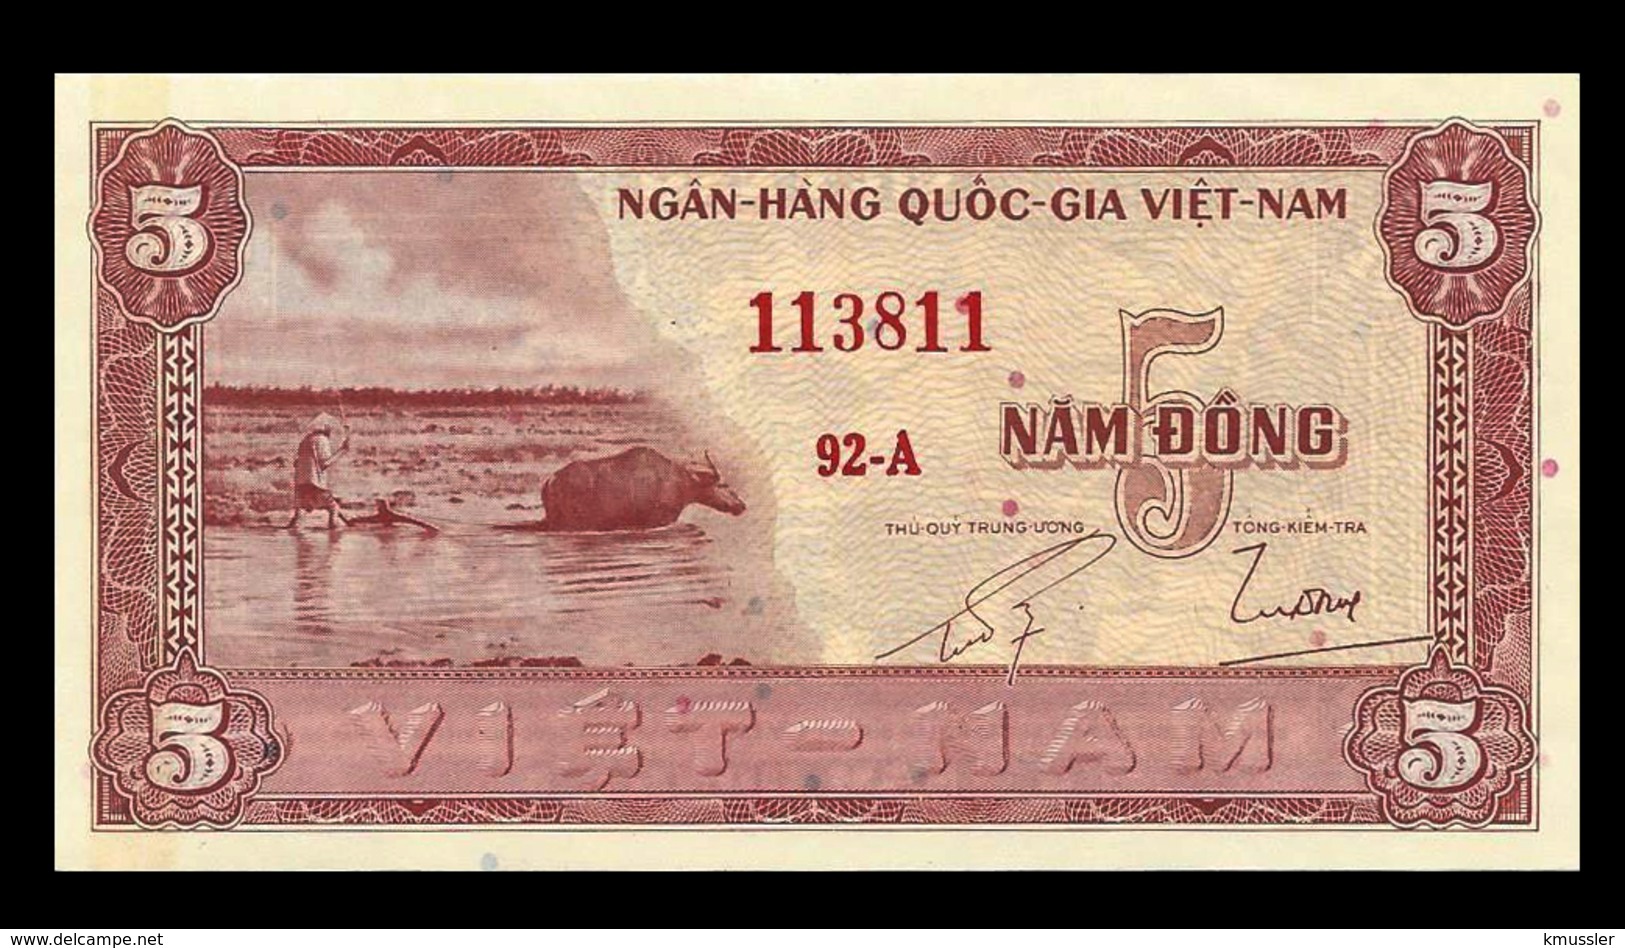 # # # Banknote Aus Südvietnam (South Vietnam) 5 Dong UNC # # # - Vietnam